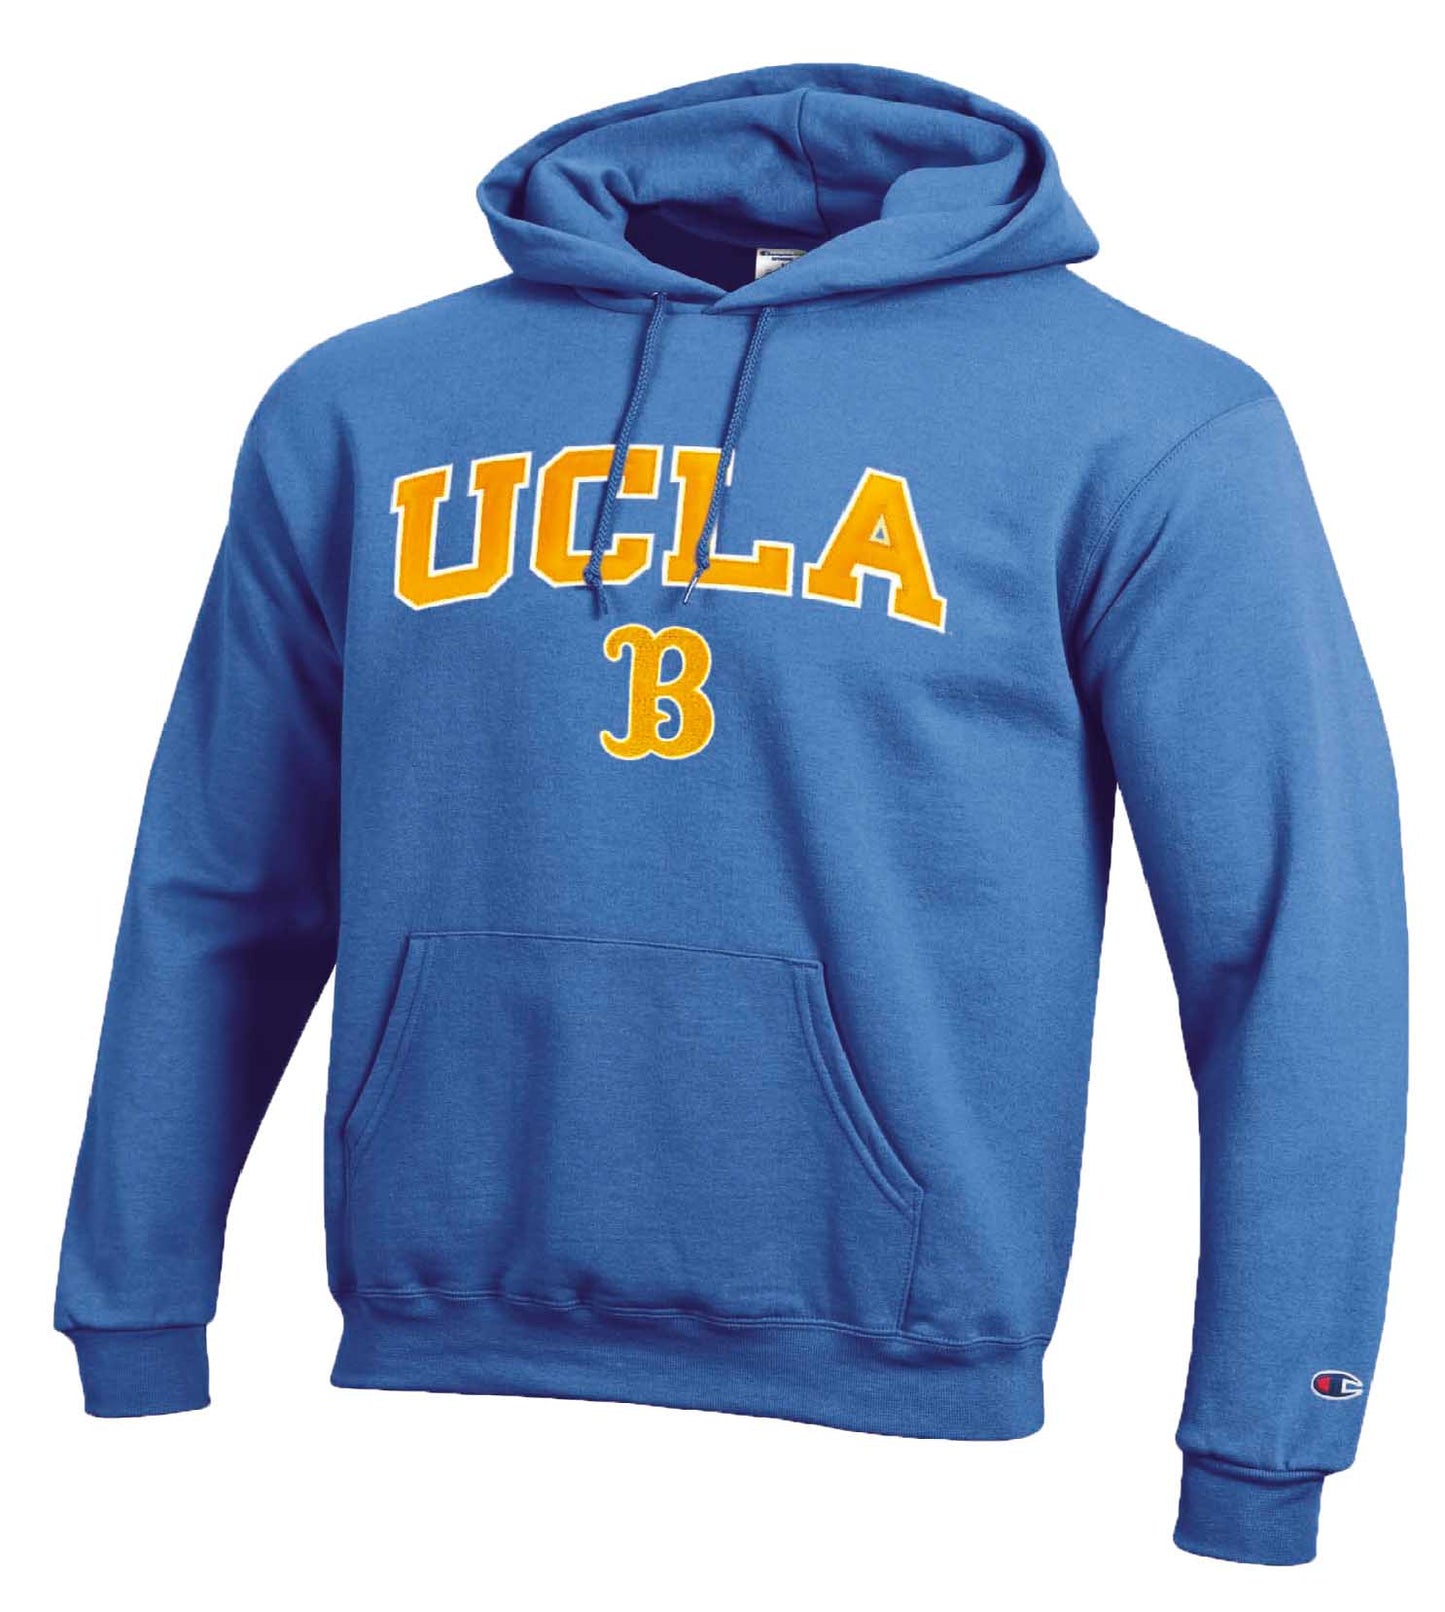 UCLA Bruins Champion Adult Tackle Twill Hooded Sweatshirt - Light Blue